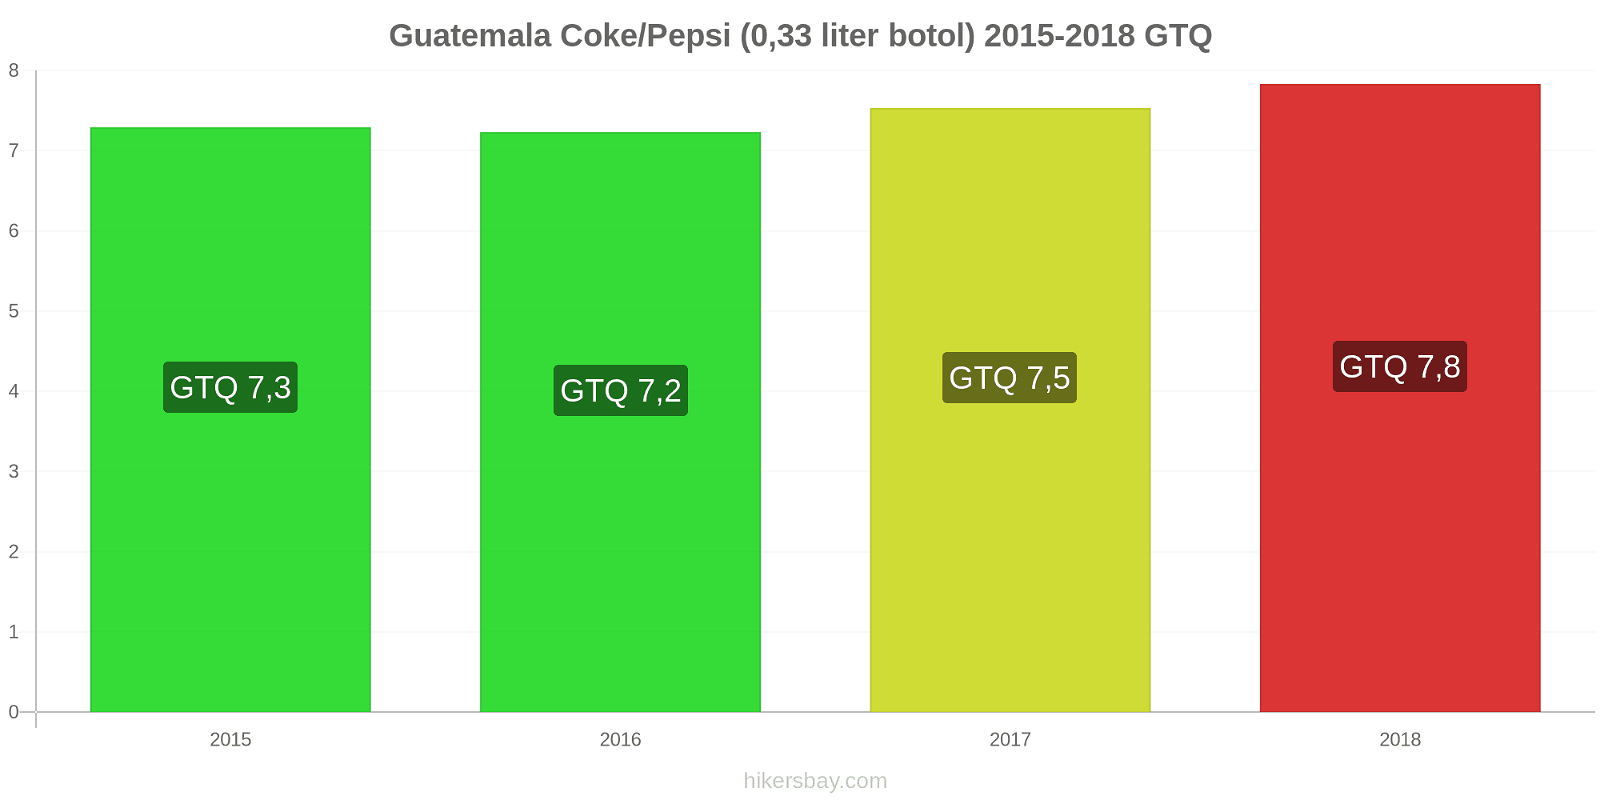 Guatemala perubahan harga Coca-Cola/Pepsi (botol 0.33 liter) hikersbay.com